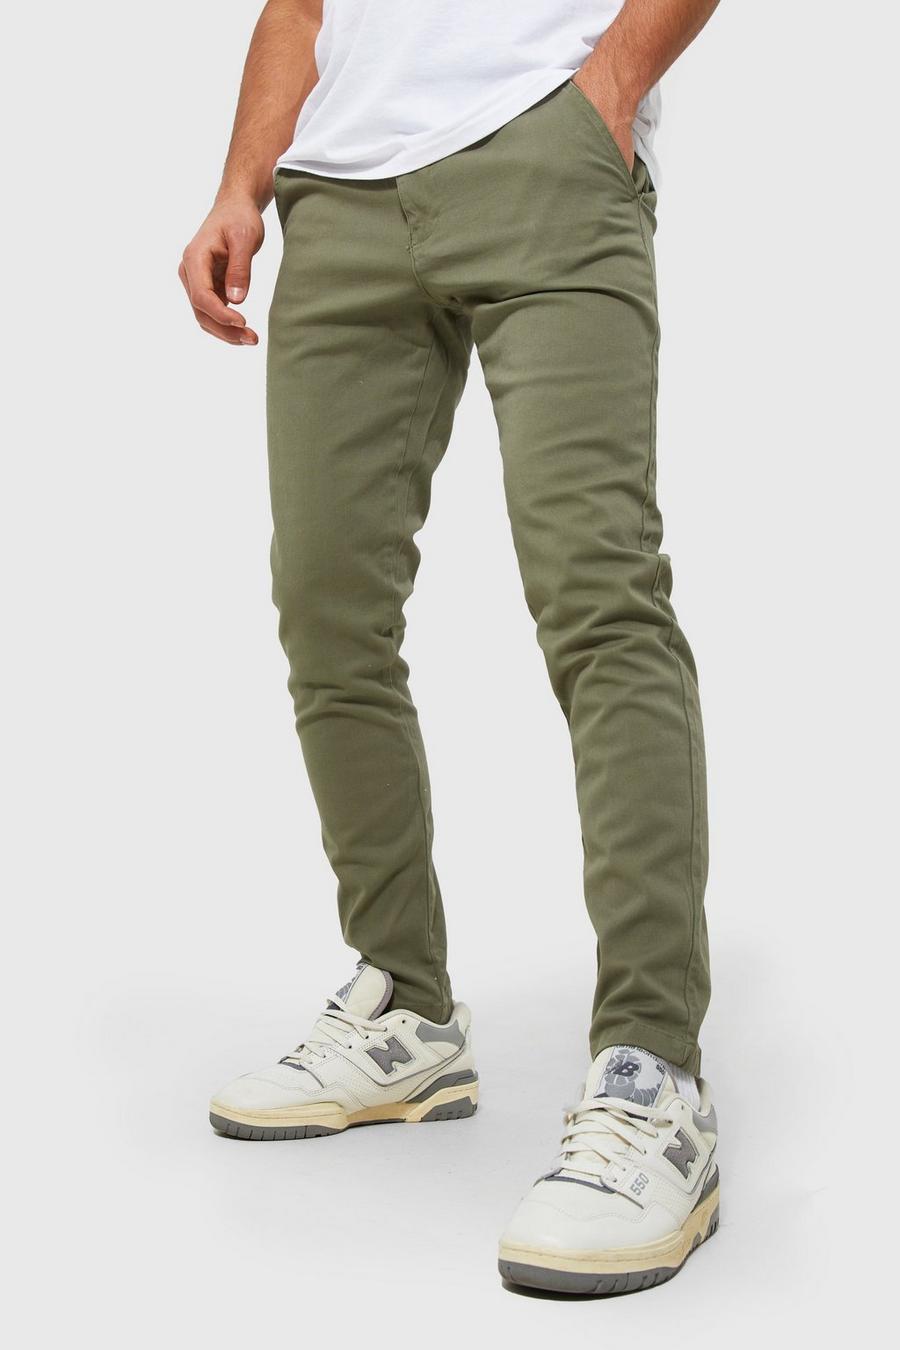 Super Slim Skinny Tight Fit Chino Pants MT2205694